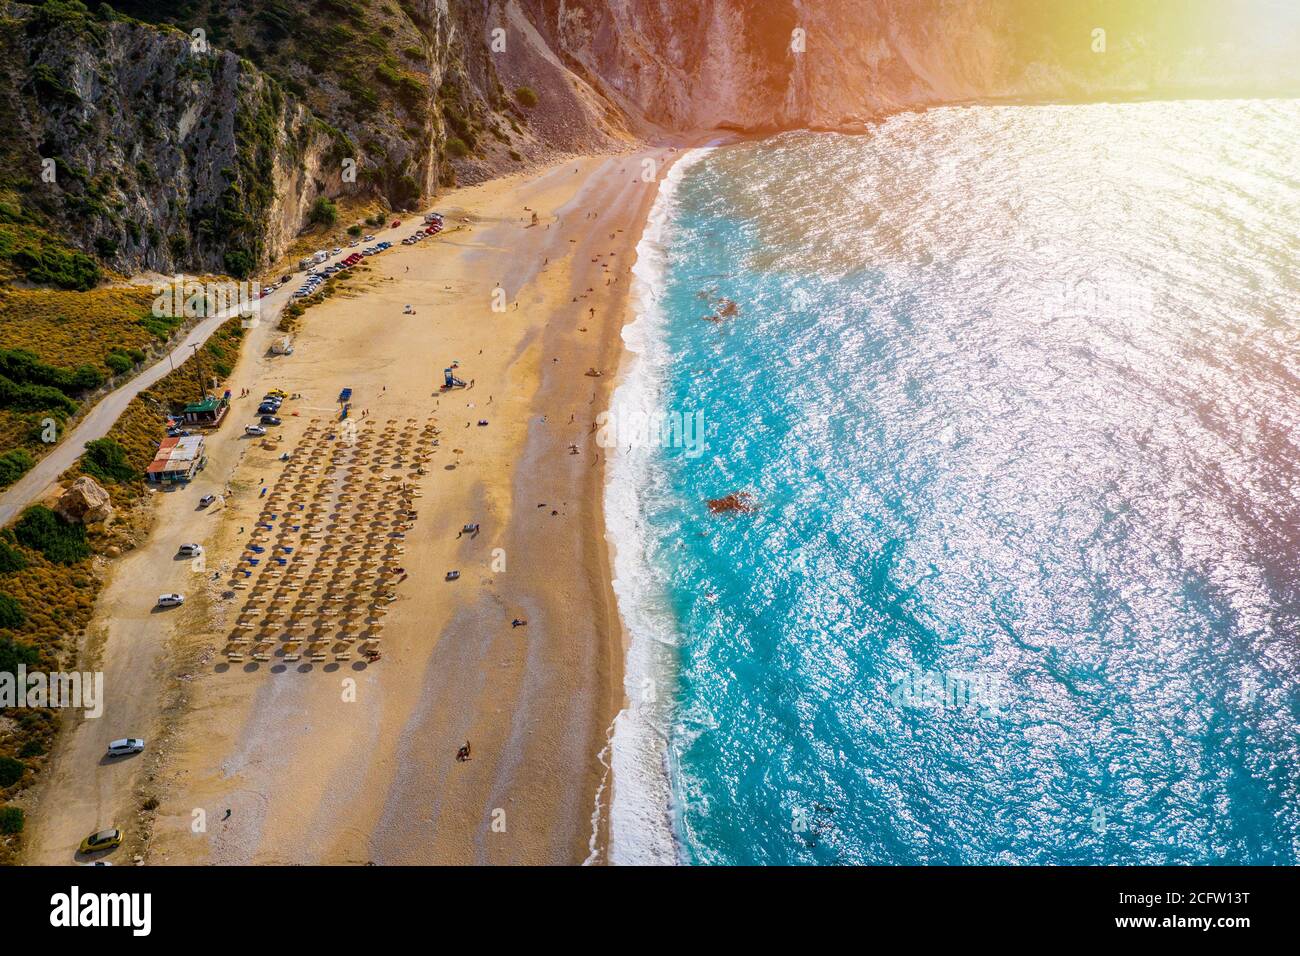 Vue aérienne de drone de la baie turquoise et saphir iconique et de la plage de Myrtos, île de Kefalonia (Céphalonie), Ionienne, Grèce. Plage de Myrtos, Kefalonia isl Banque D'Images